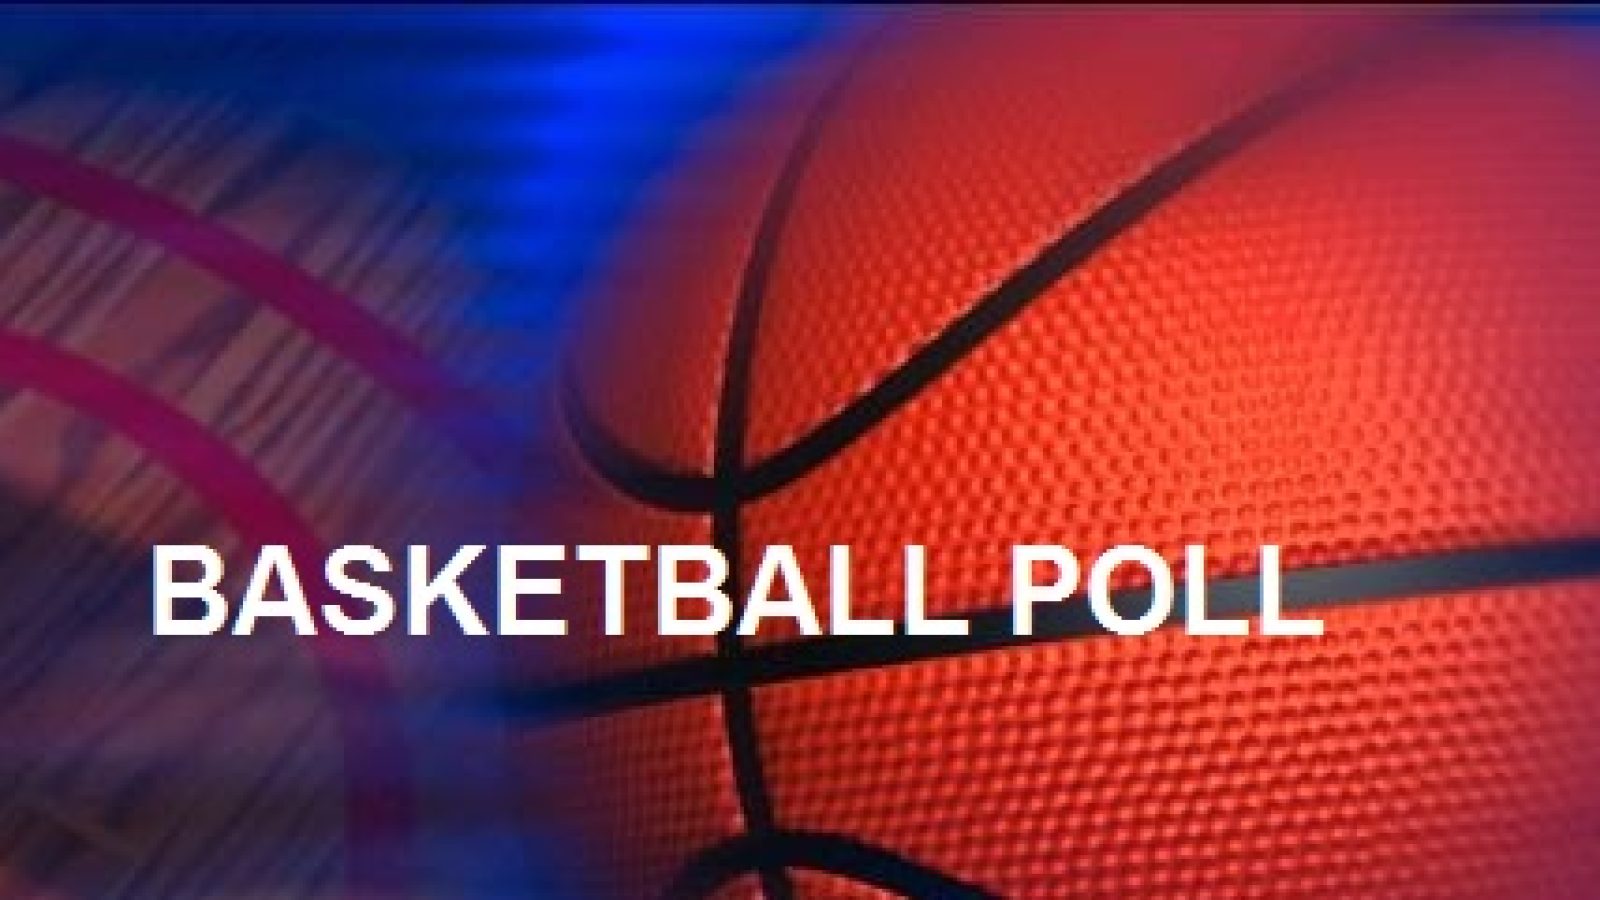 Basketball-Poll-News-1